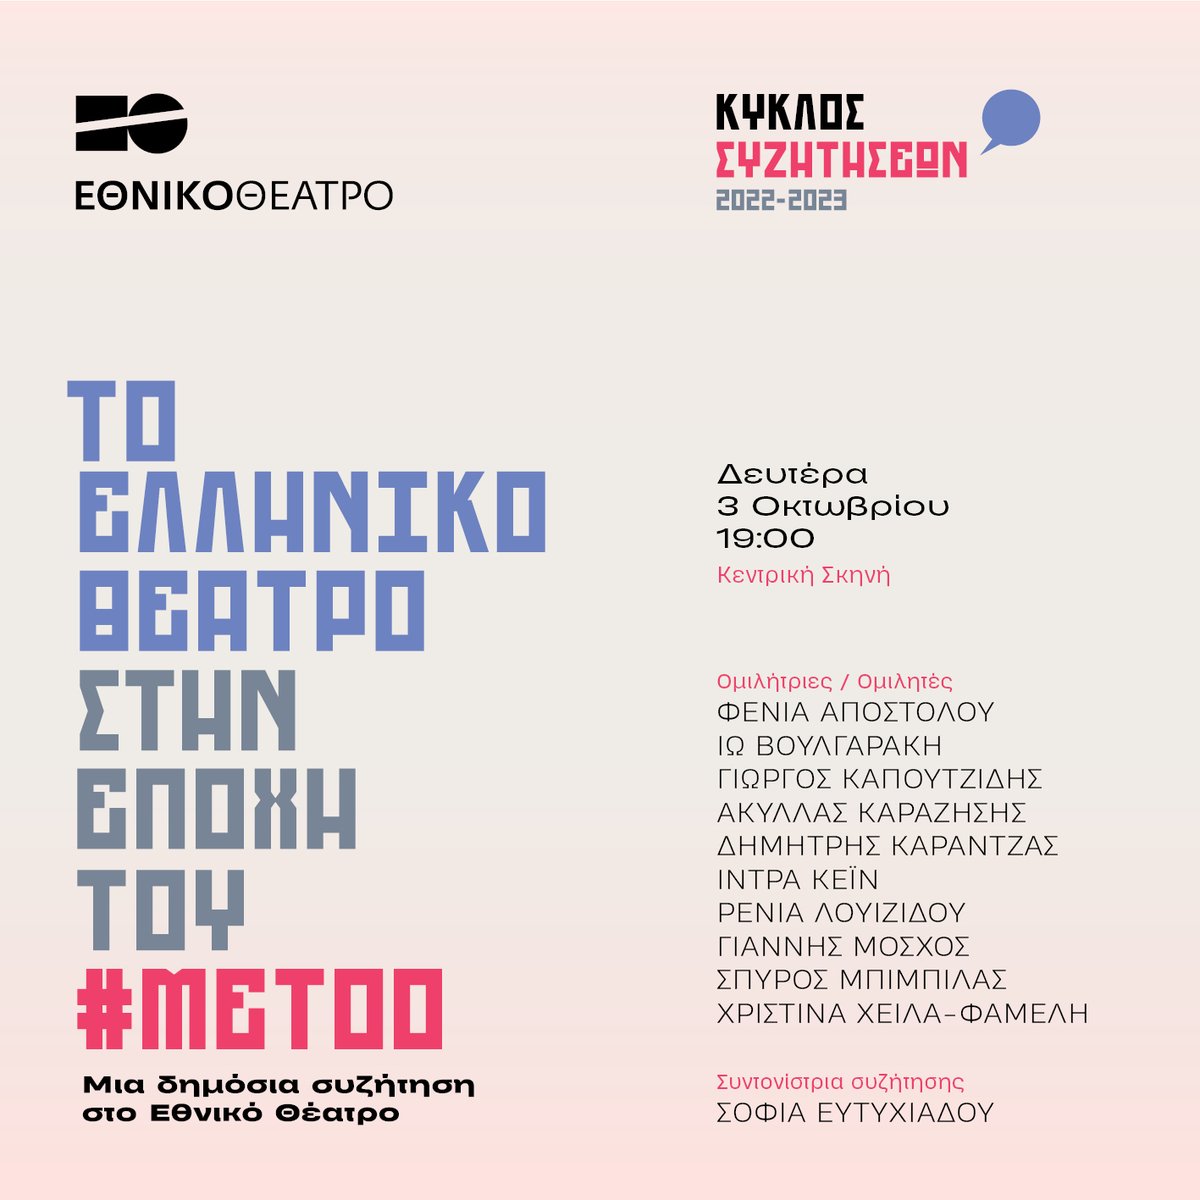 Μια δημόσια συζήτηση για τις αλλαγές που έχει φέρει το #metoo στο ελληνικό θέατρο. 📅Δευτέρα, 3/10, 19.00 📍Κτήριο Τσίλλερ, Κεντρική Σκηνή. ▪️Ελεύθερη είσοδος ▪️Δελτία εισόδου θα είναι διαθέσιμα την ίδια μέρα από τις 17.30 στα ταμεία του ΕΘ ▪️Θα τηρηθεί σειρά προτεραιότητας